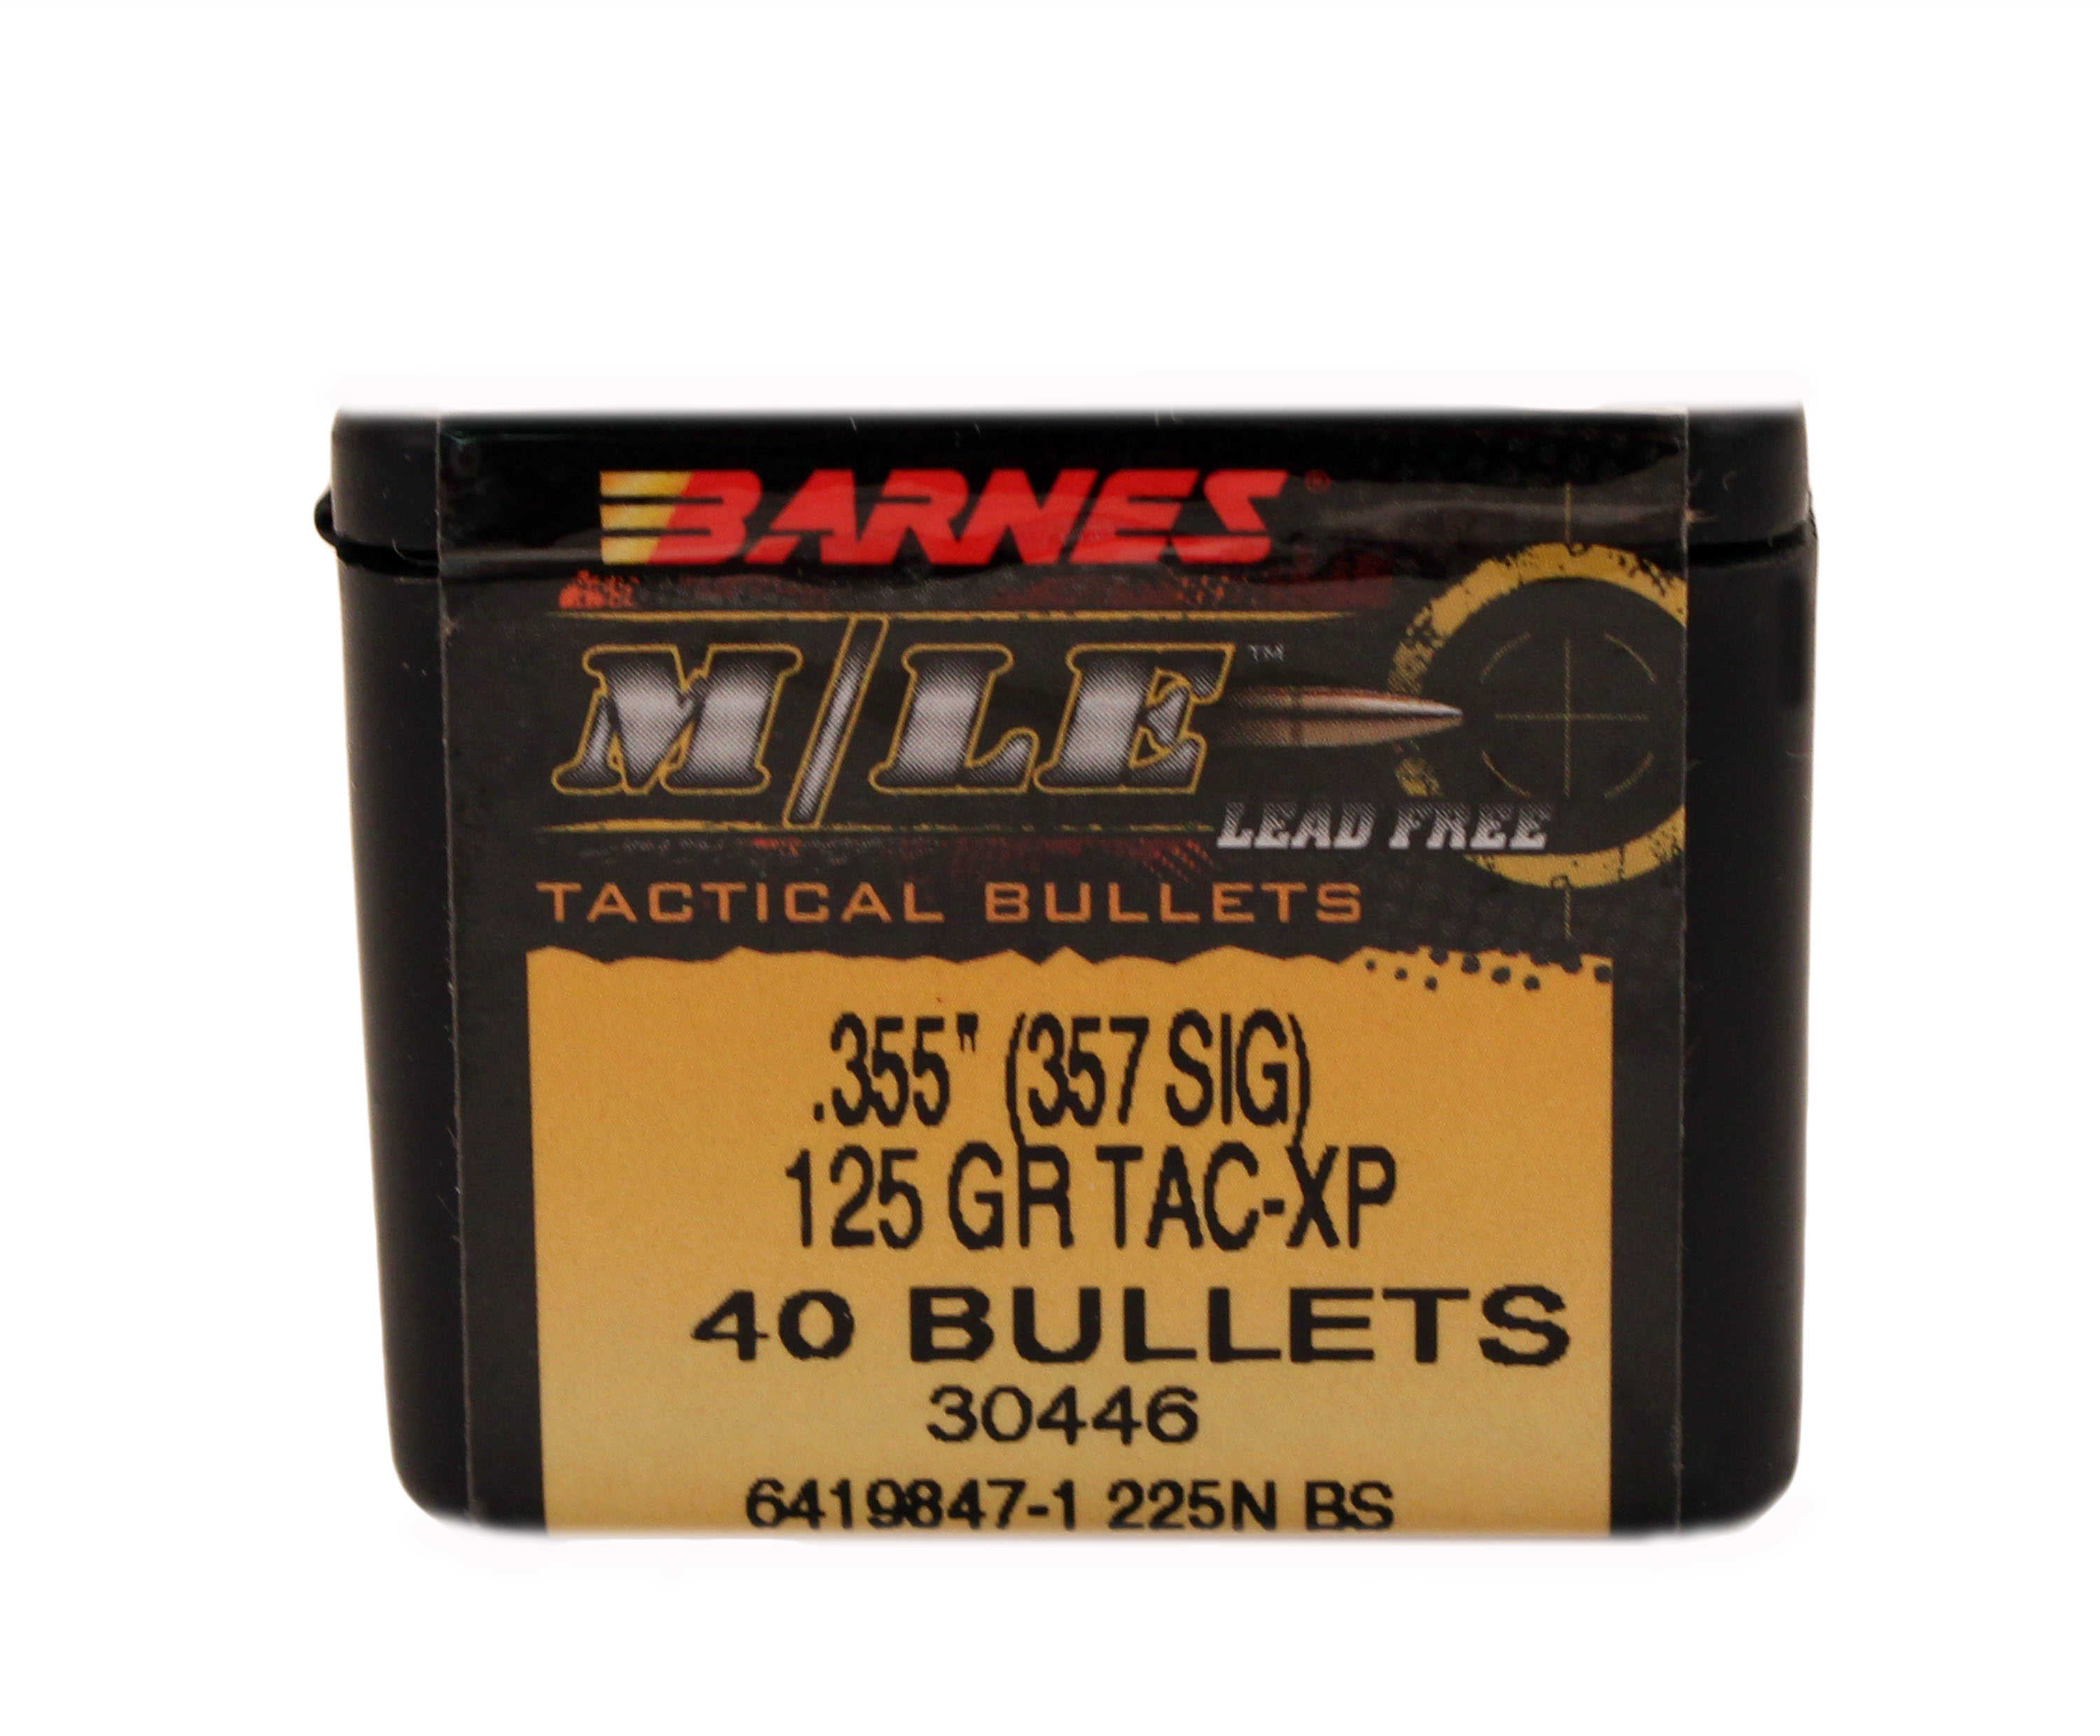 Barnes 357 Sig .355 Diameter 125 Grain Tactical Pistol X Bullet 40 Per Box Md: 35503